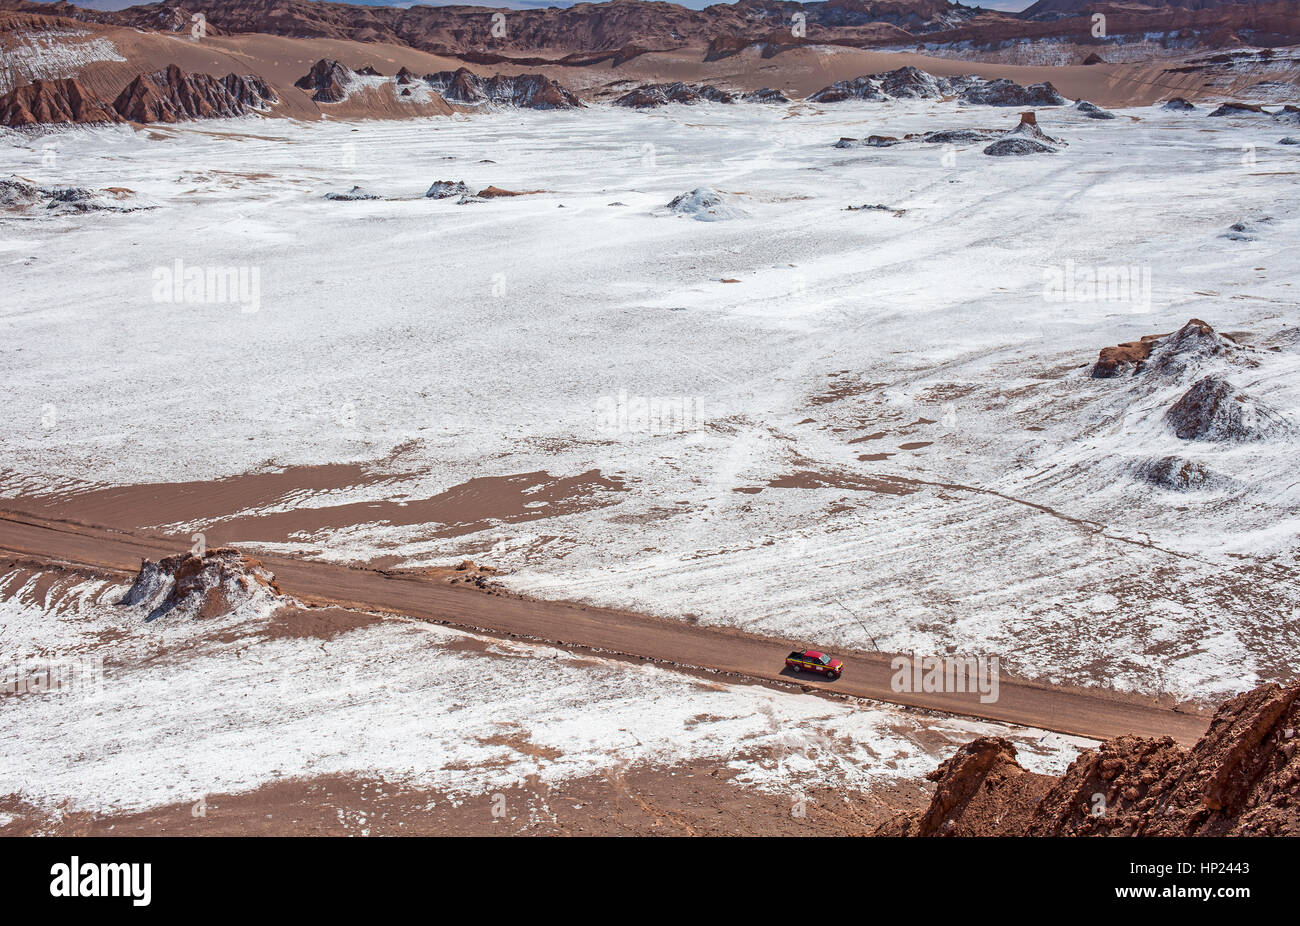 Vue aérienne, Valle de la Luna (Vallée de la Lune) et sel déposé sur le sol, désert d'Atacama. Région d'Antofagasta. Chili Banque D'Images